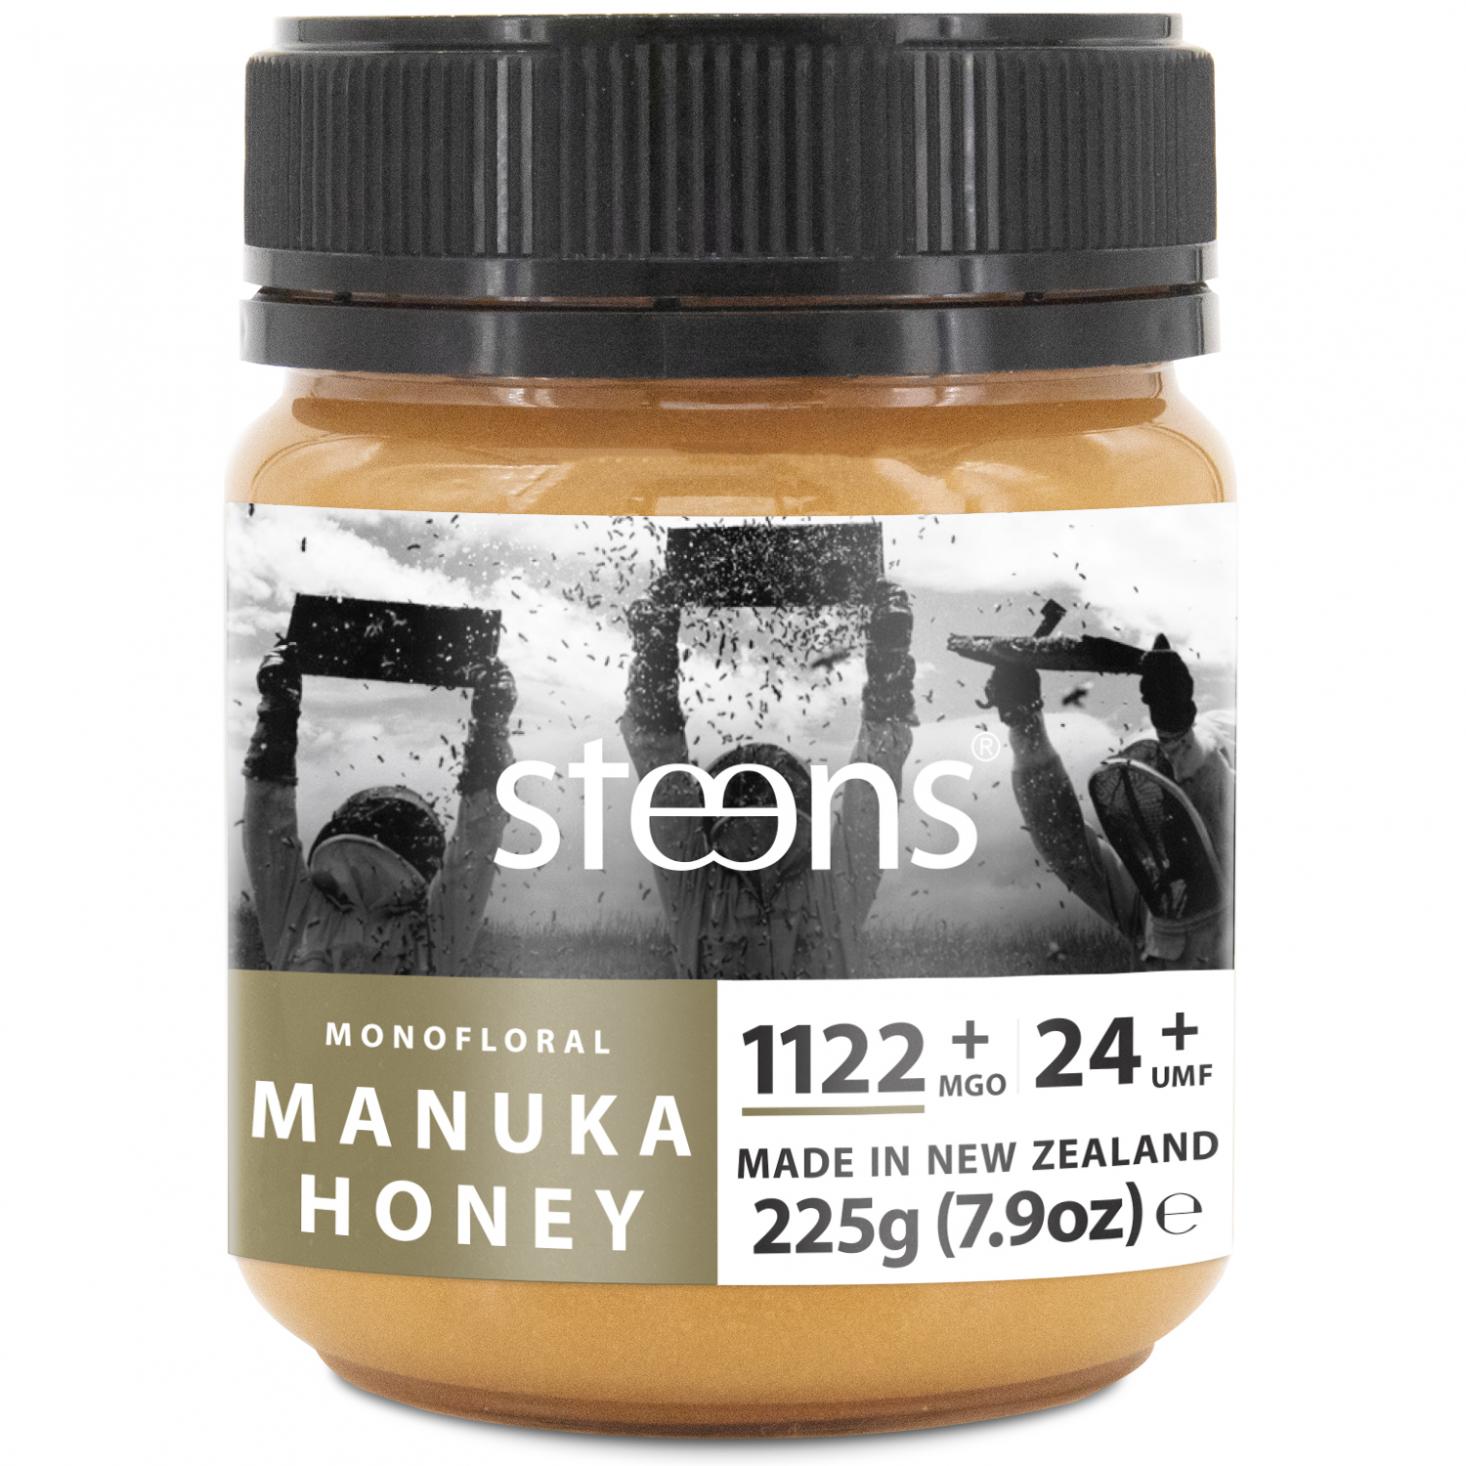 Monofloral Manuka Honey 1122+ MGO 24+ UMF 225g